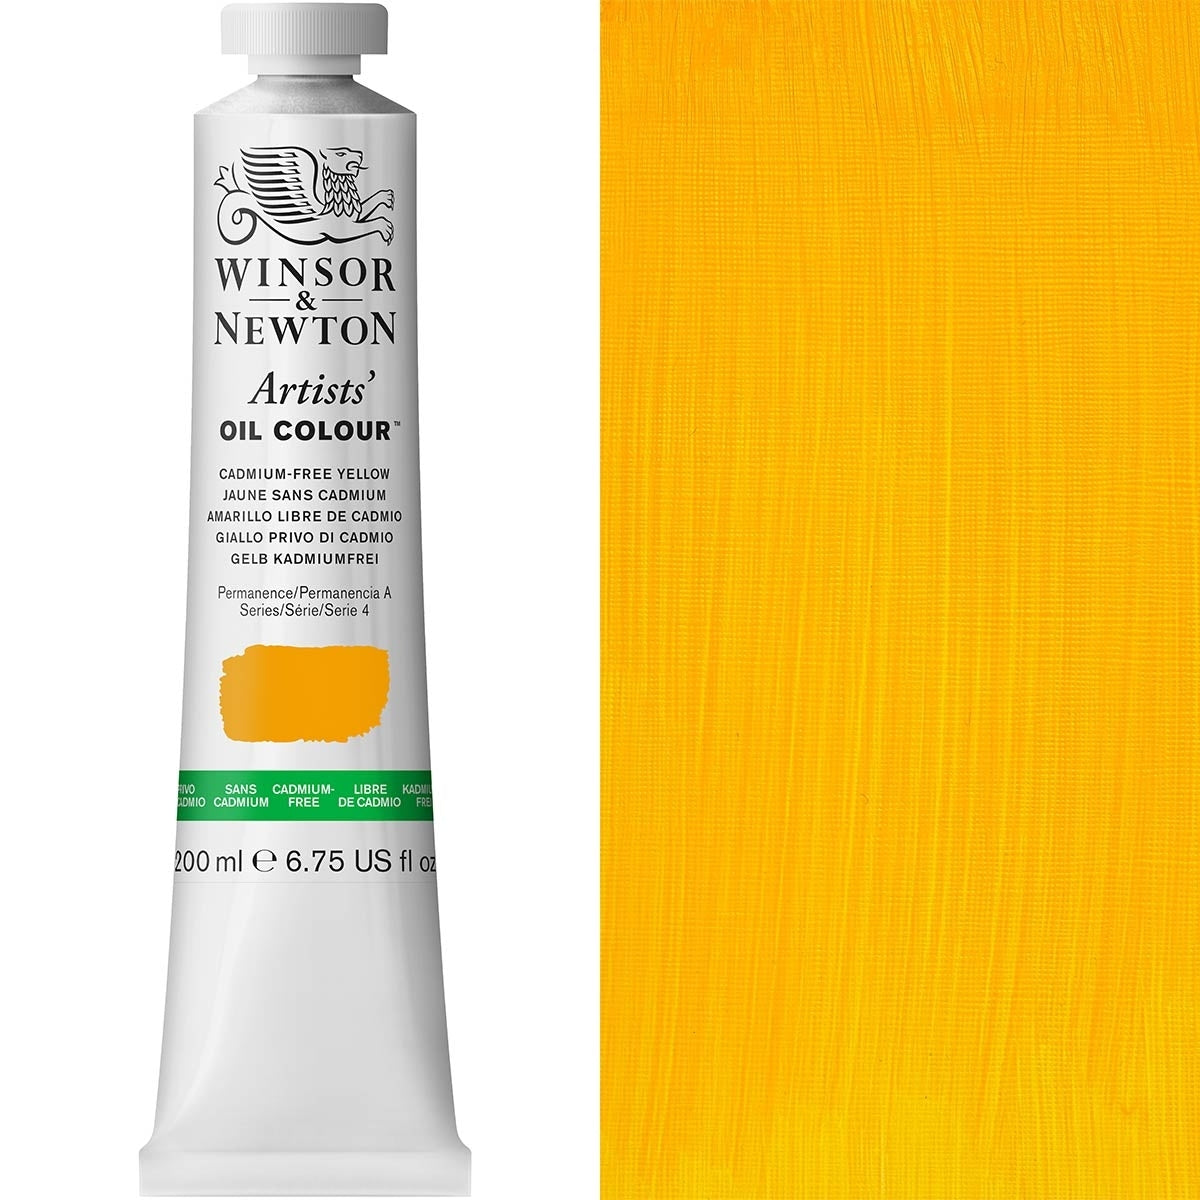 Winsor e Newton - Colore olio degli artisti - 200 ml - Giallo libero CAD